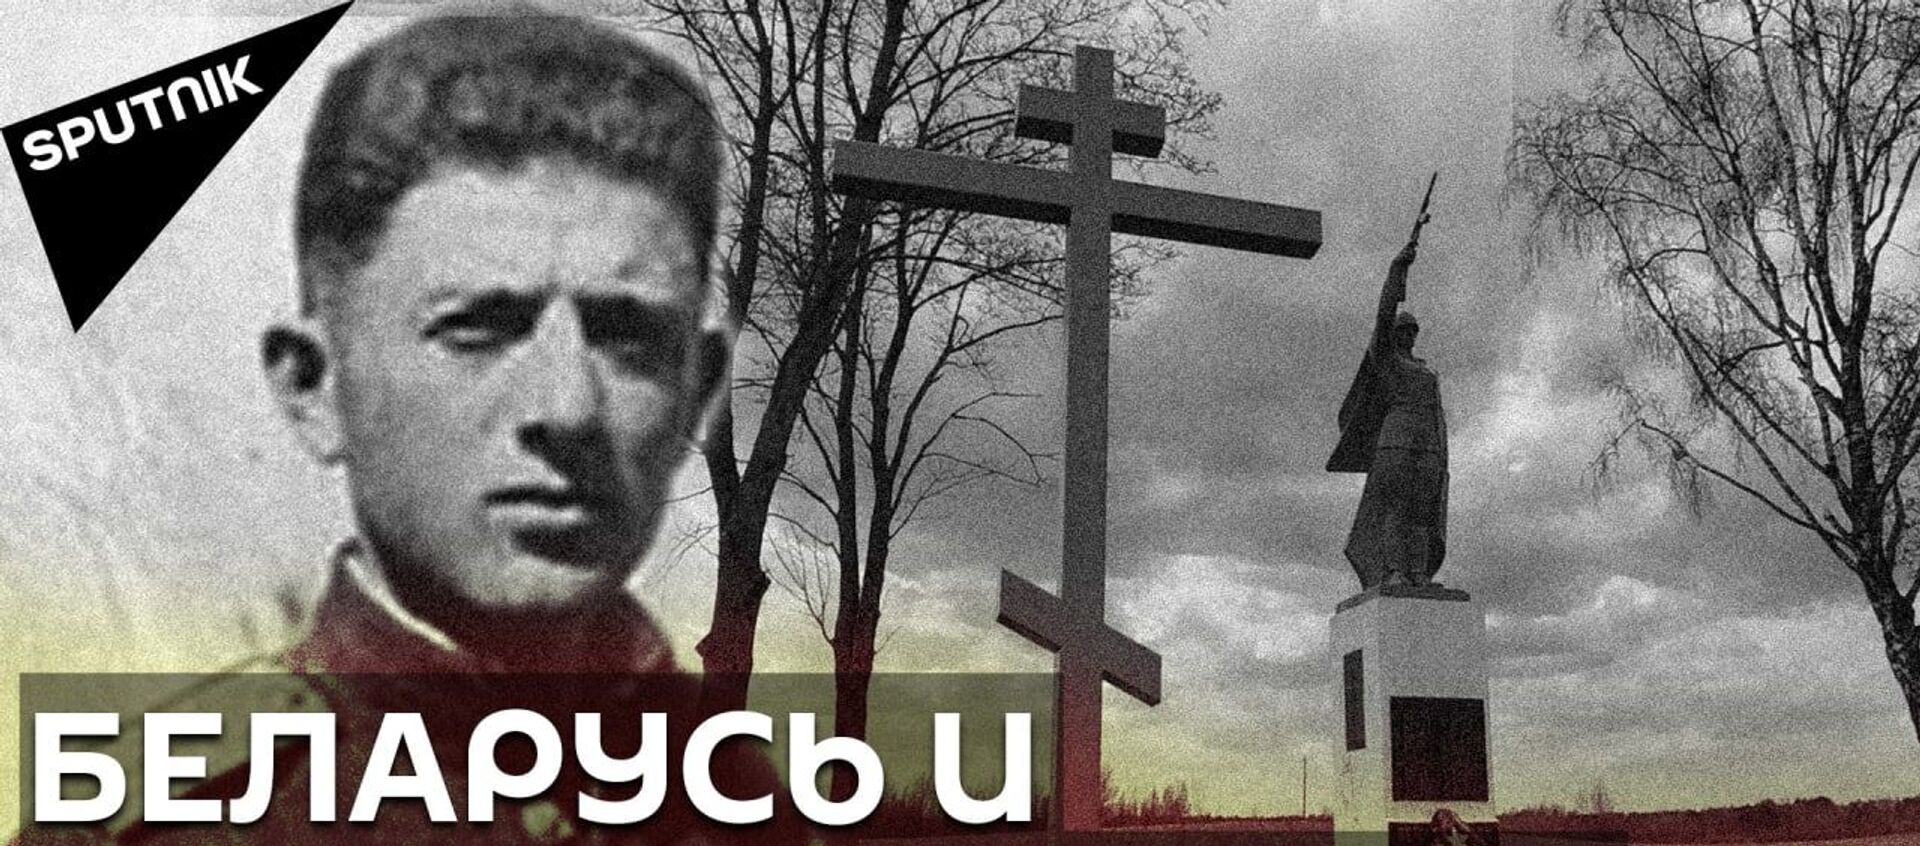 9 мая, Беларусь и Грузия: как поэт Мирза Геловани объединил два народа - Sputnik Грузия, 1920, 09.05.2021